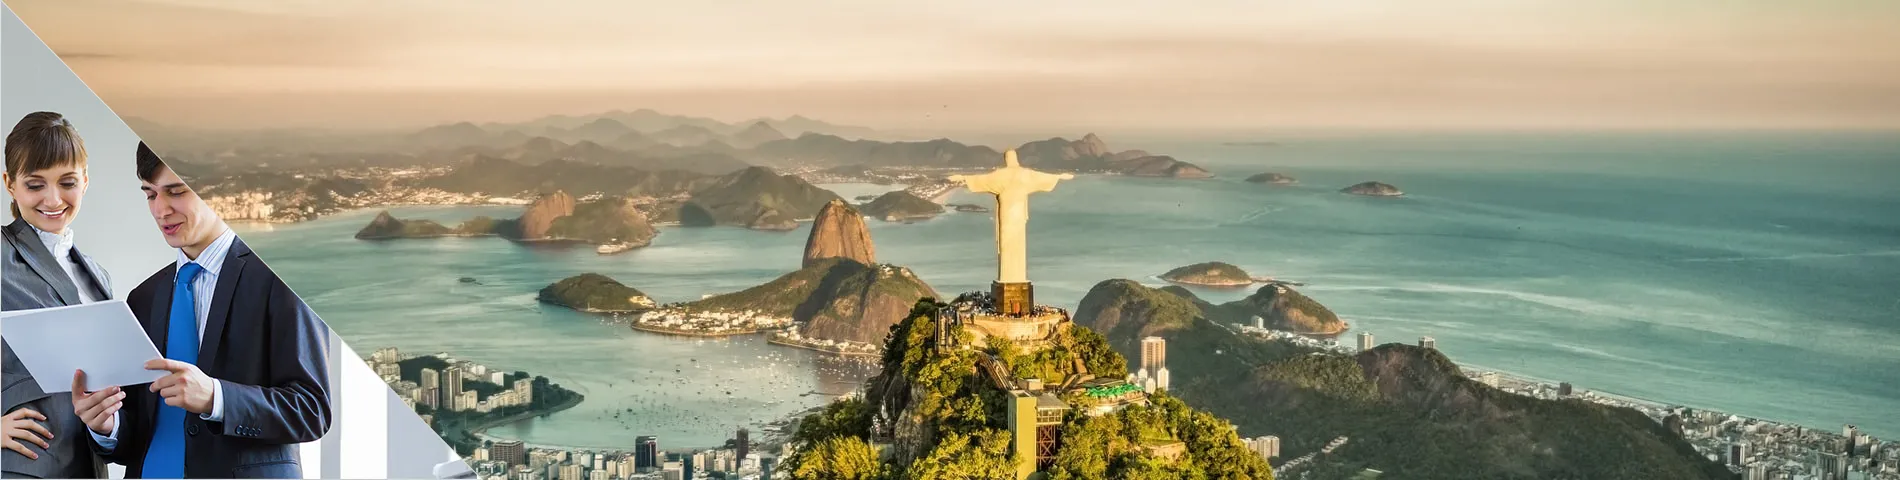 Rio de Janeiro - Business één-op-één